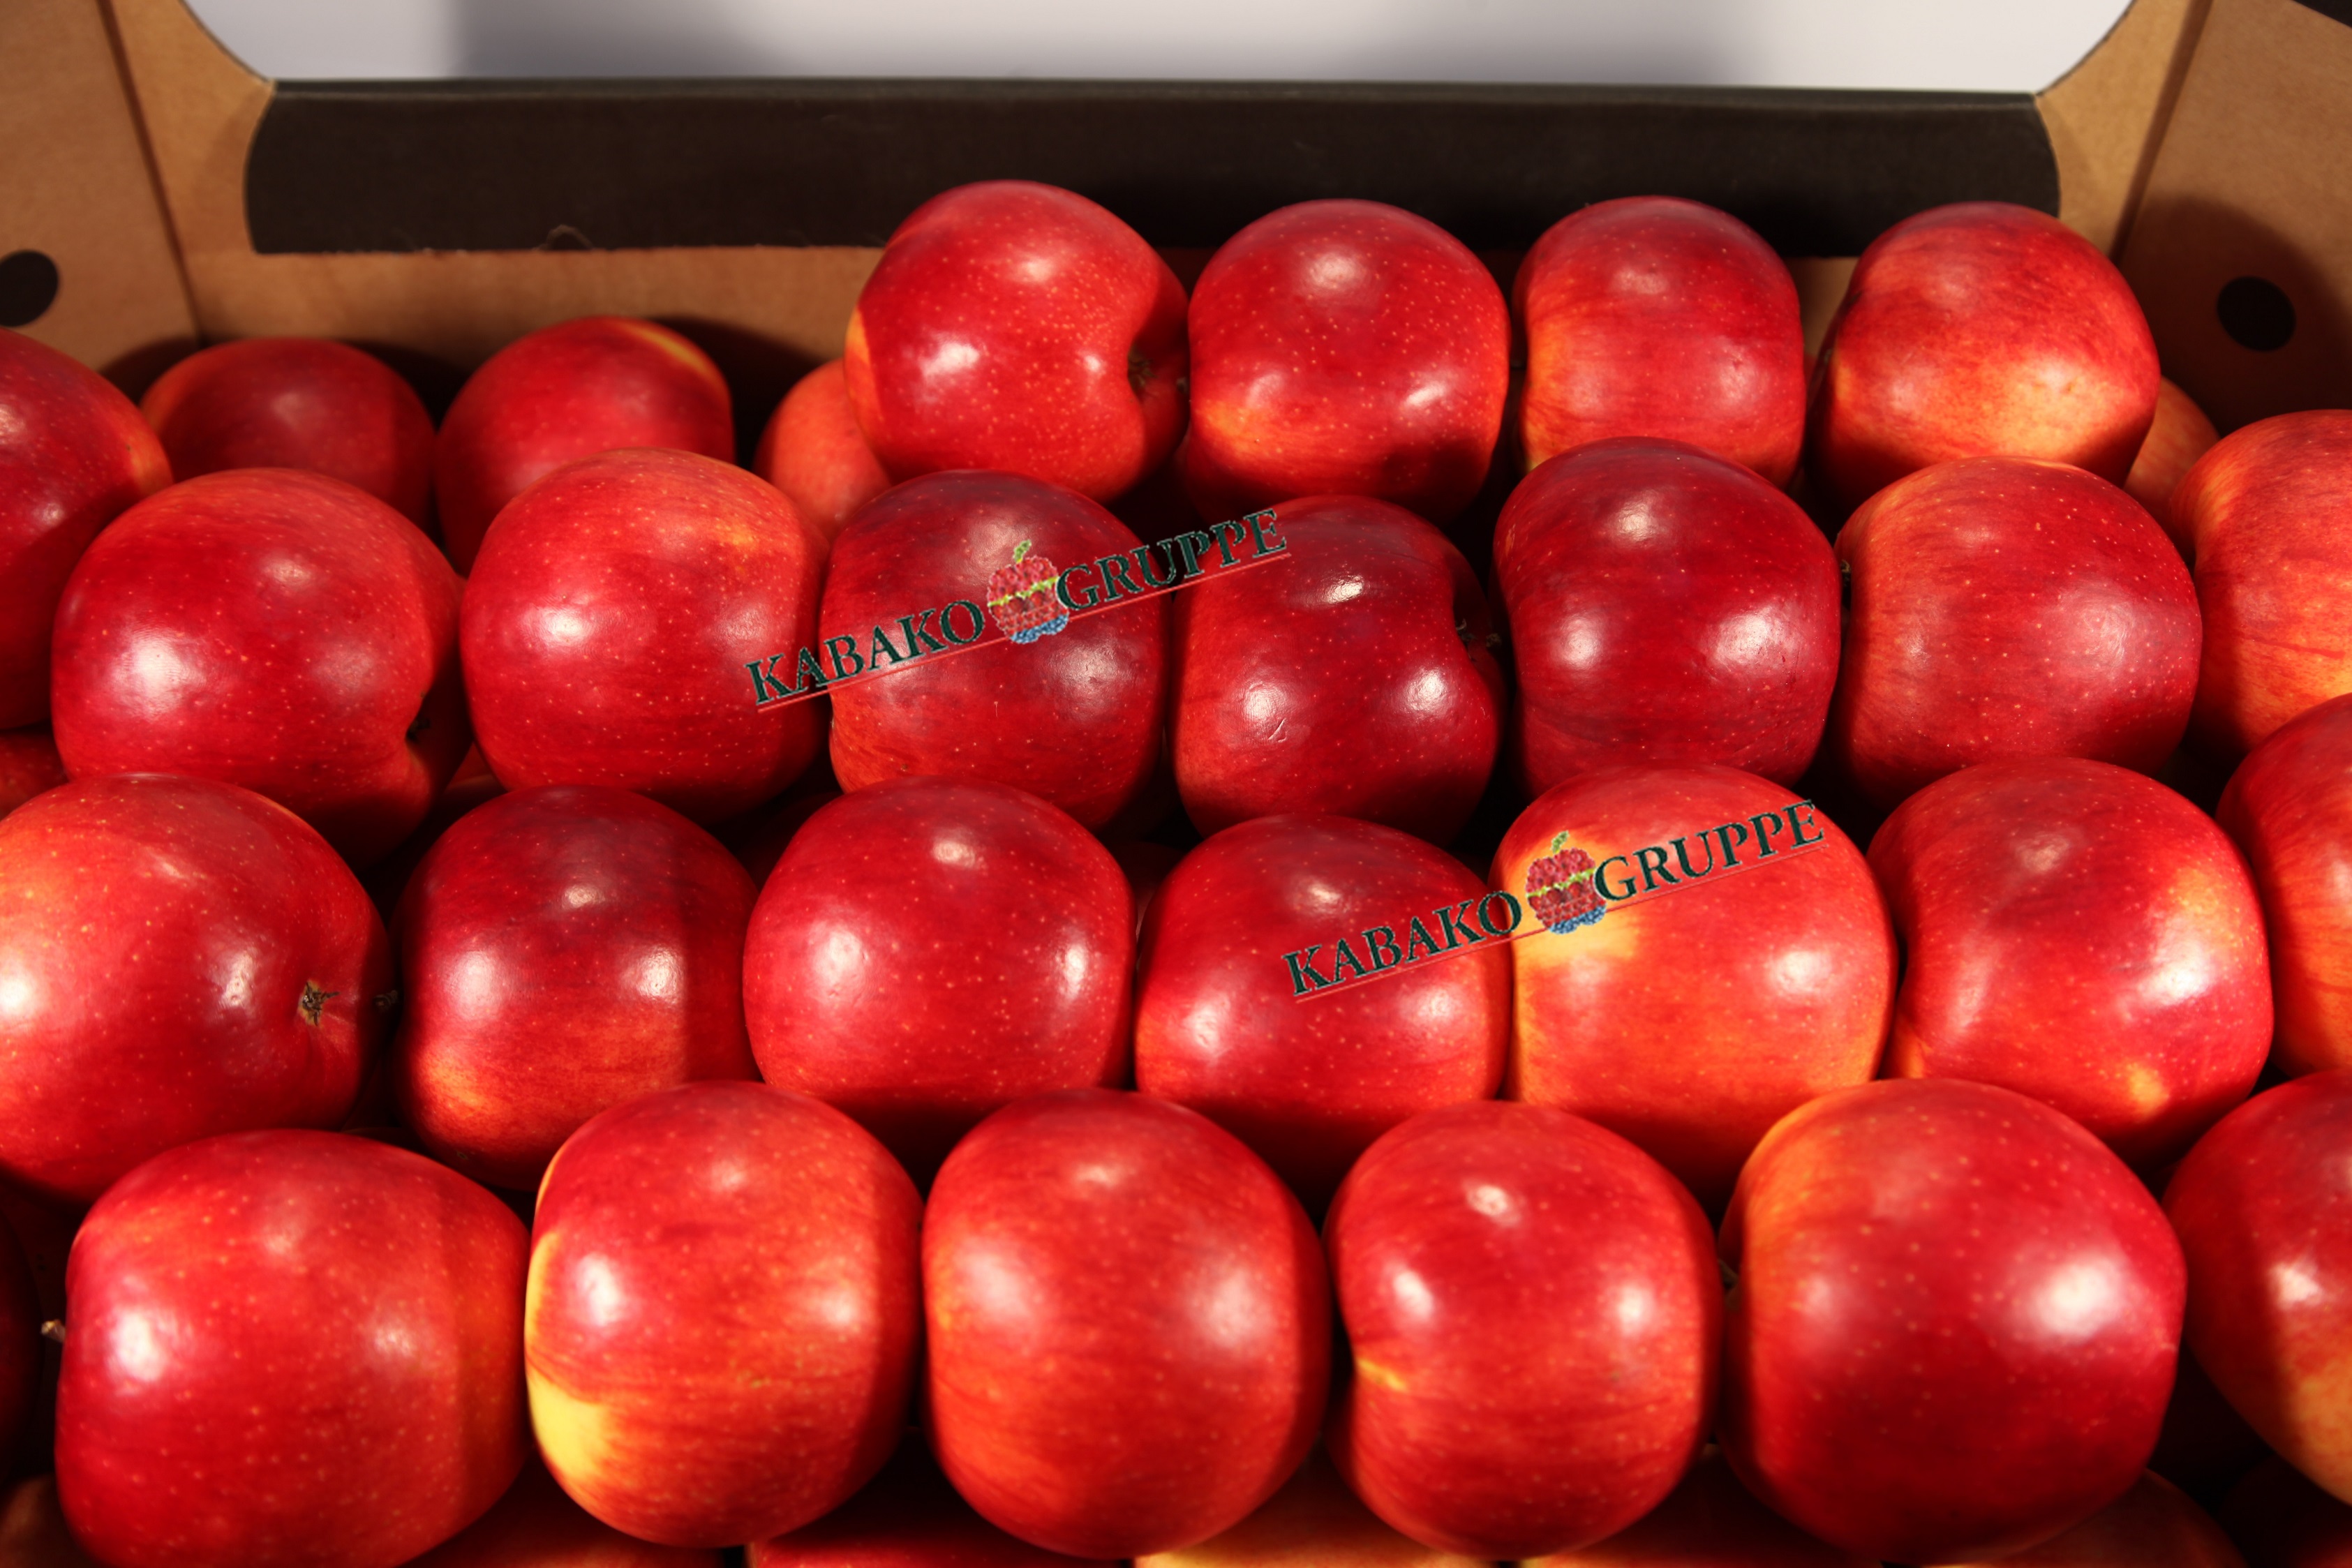 Frozen (IQF) Apples 49